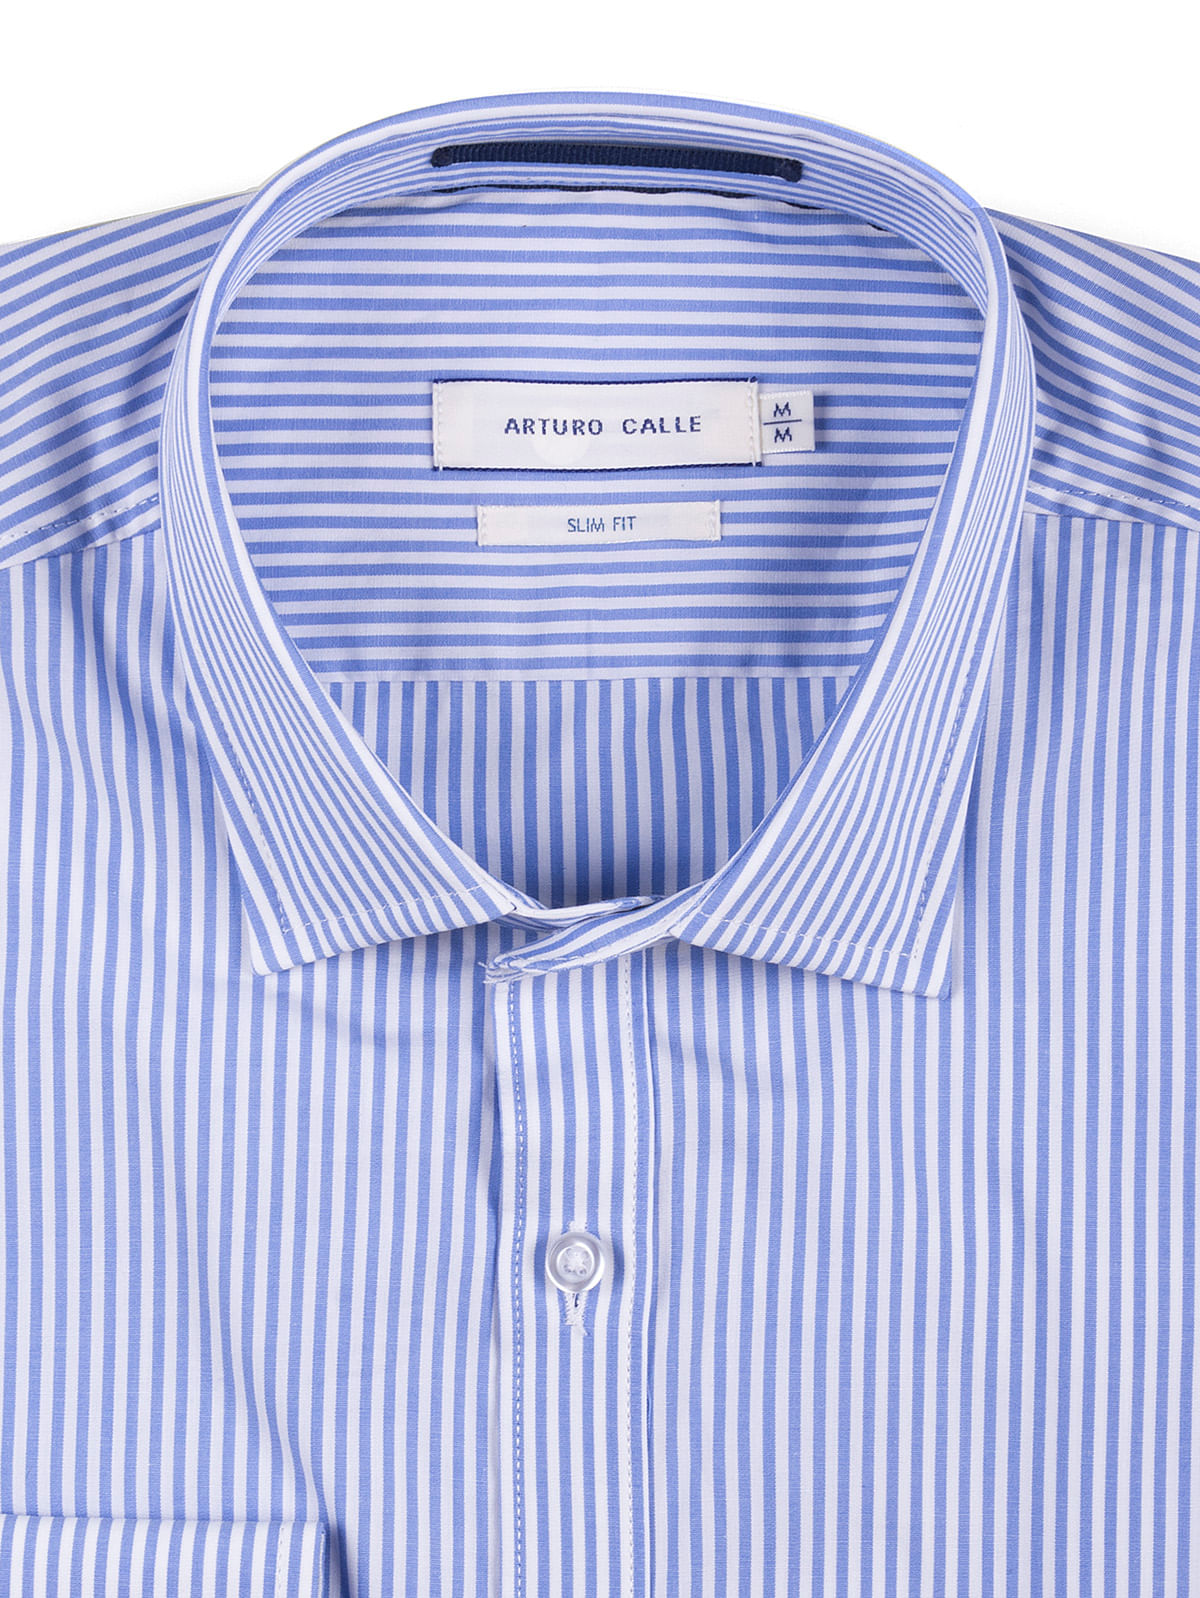 Camisas Arturo Calle Para Hombre Precios Baratas Online - ids de ropa para chicos roblox